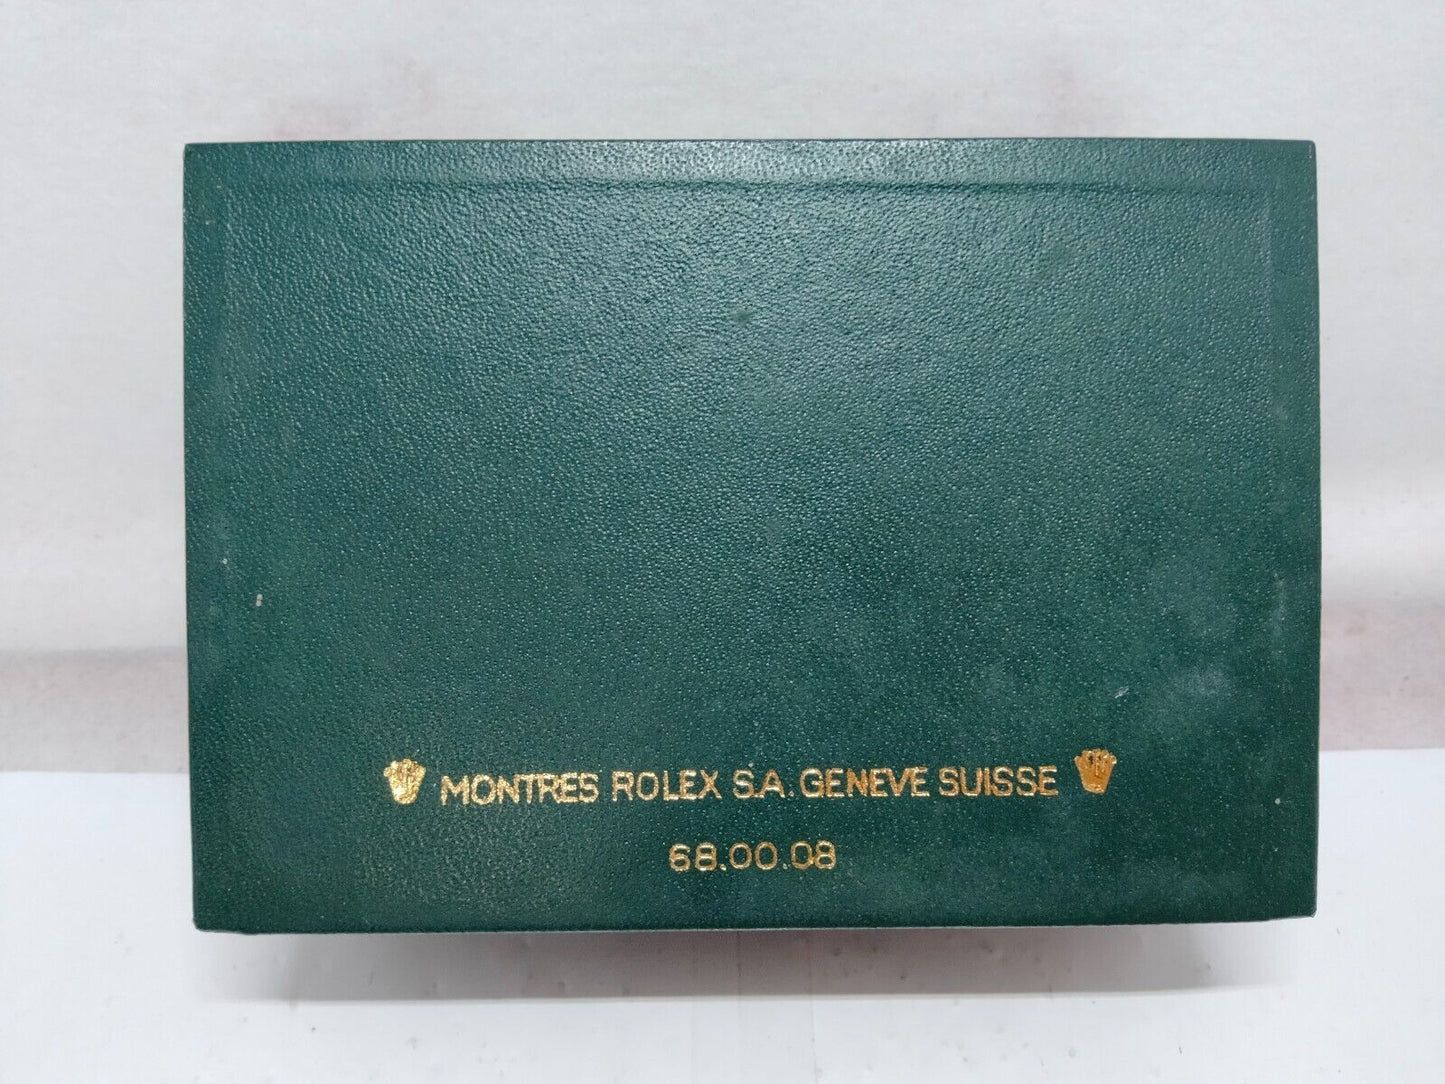 GENUINE ROLEX 16233 Datejust watch box case booklet 1994' 68.00.08 230808002y2S